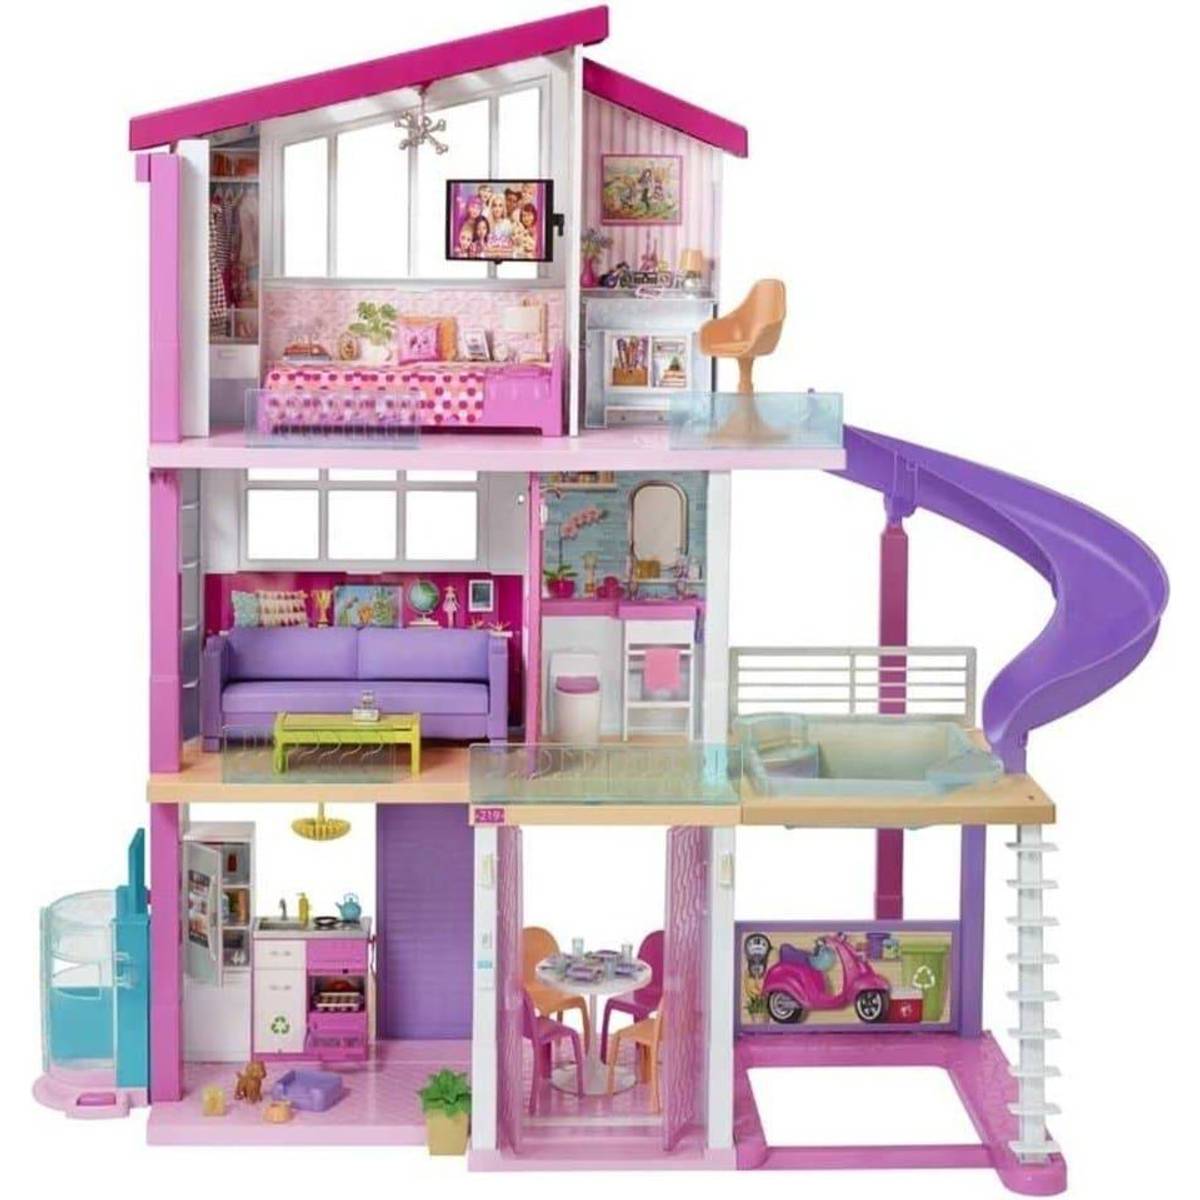 Barbie - Dukkehuse (21 produkter) hos PriceRunner • Se priser nu »